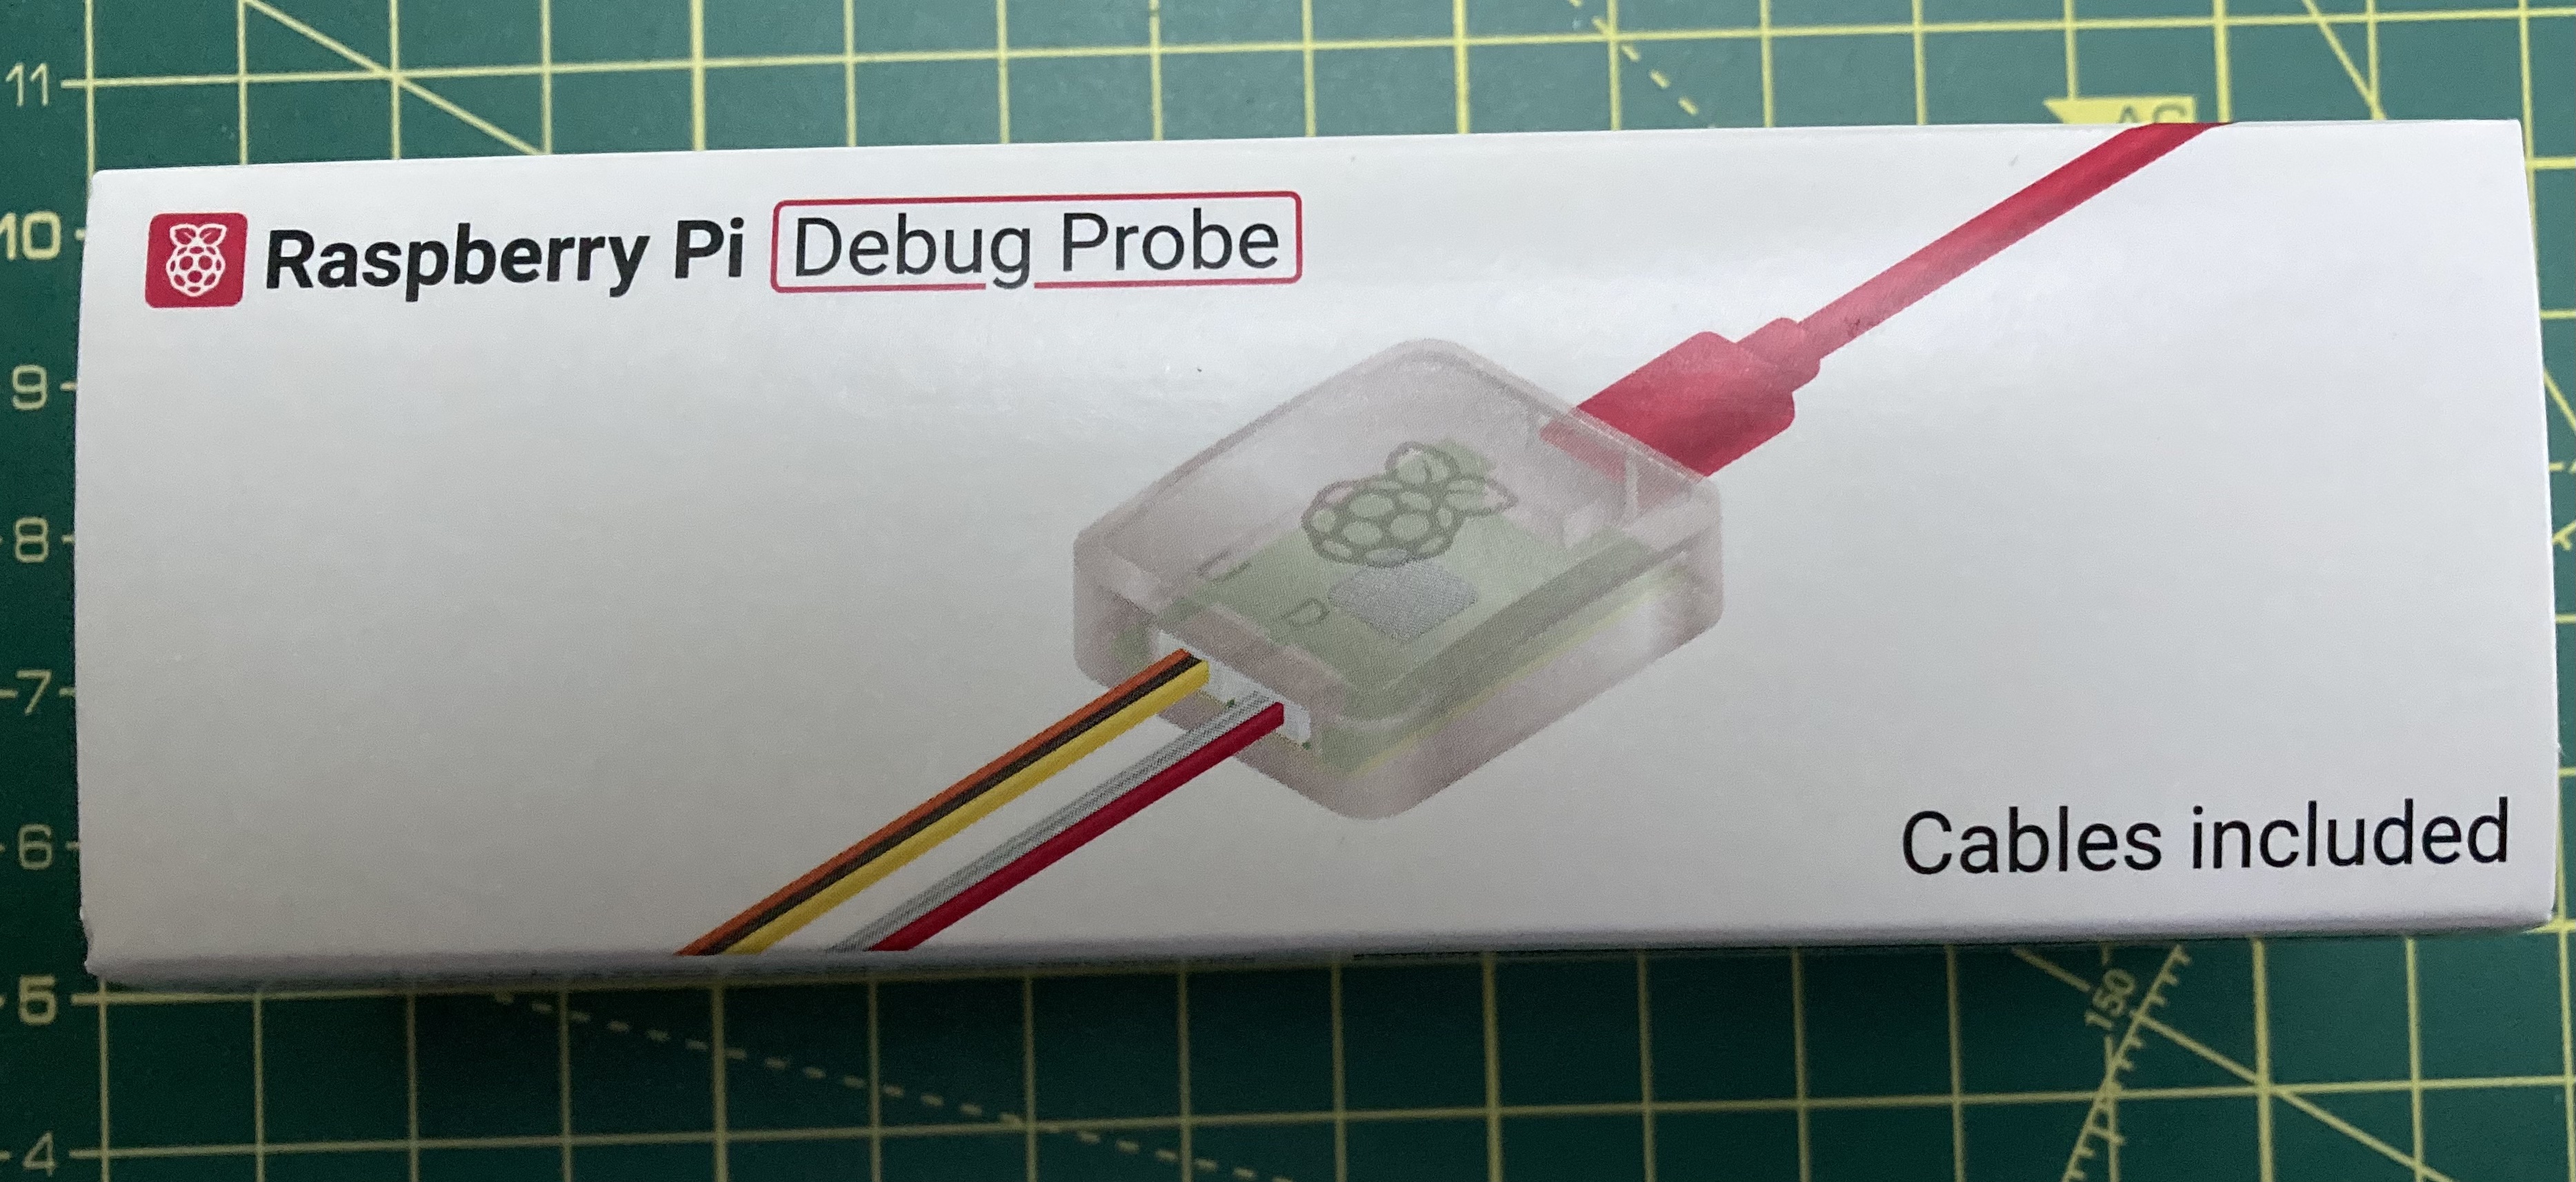 Pico Debug Probe in packaging